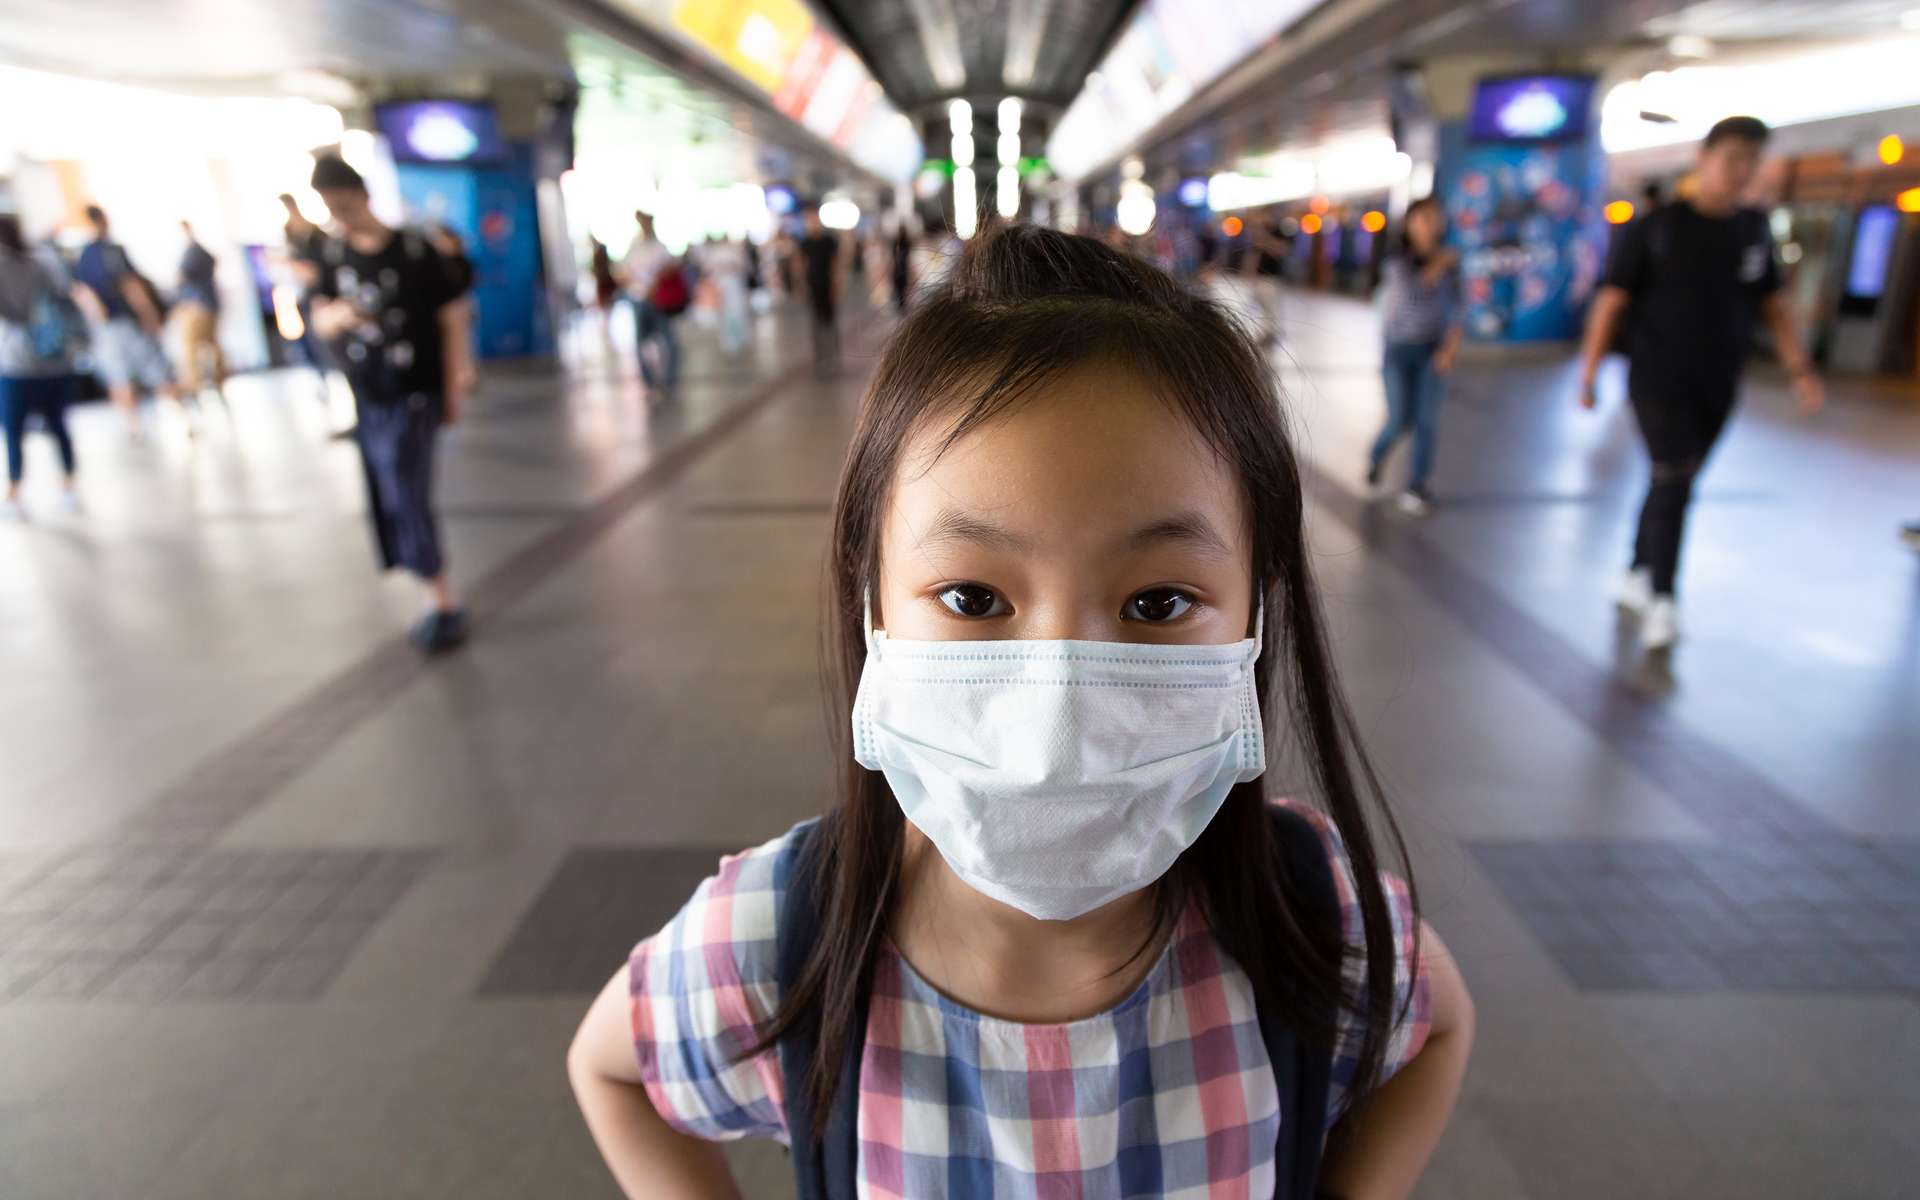 Le virus venu de Chine se propage : premier cas en Australie